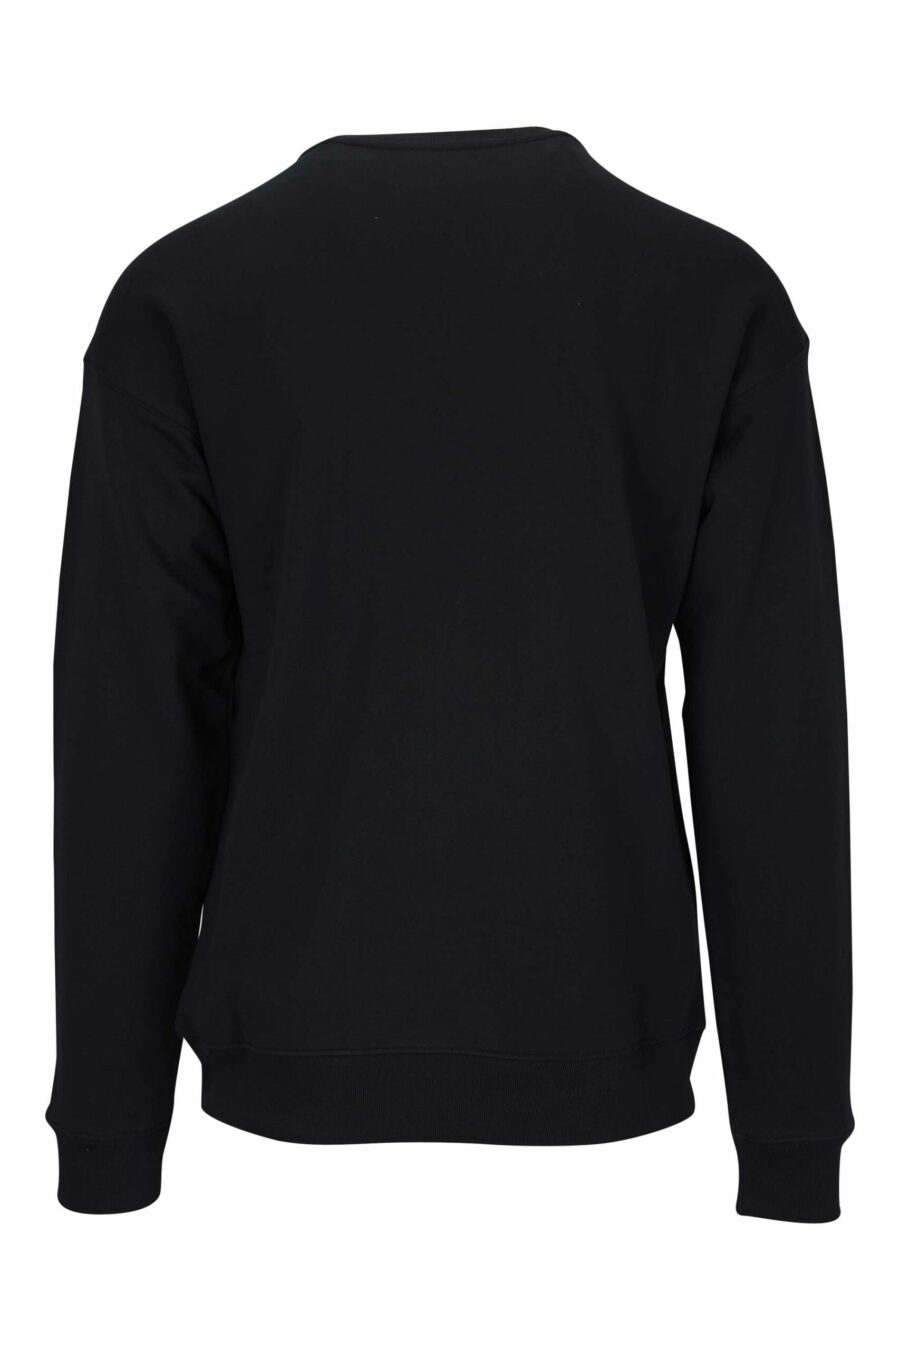 Schwarzes Sweatshirt aus Bio-Baumwolle mit klassisch weißem Maxilogo - 667113403090 1 skaliert